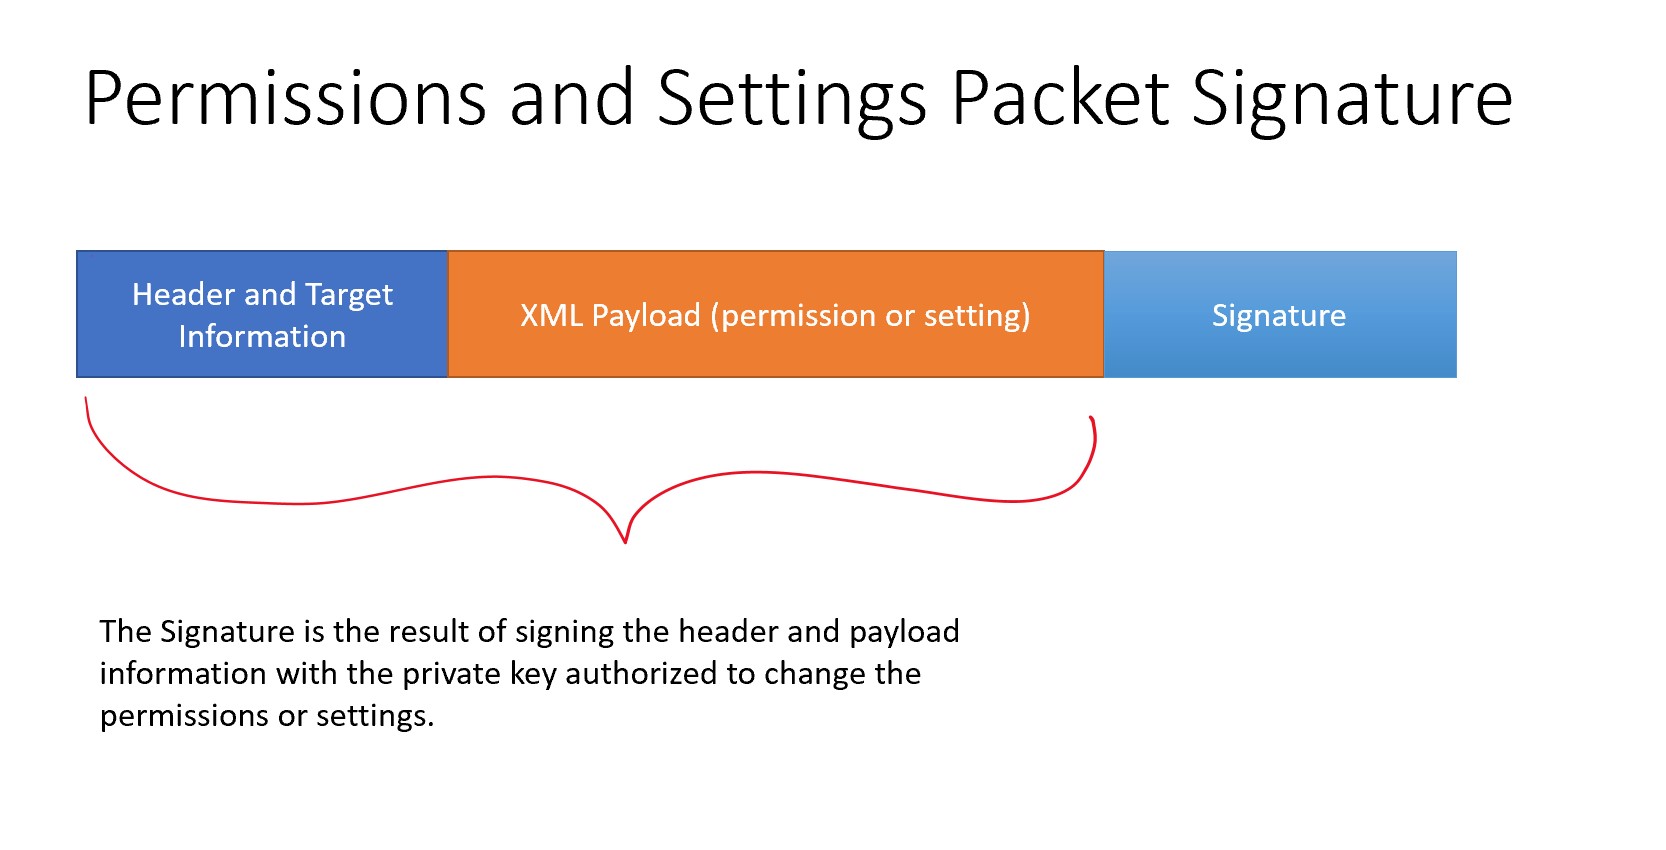 Permission packet signature